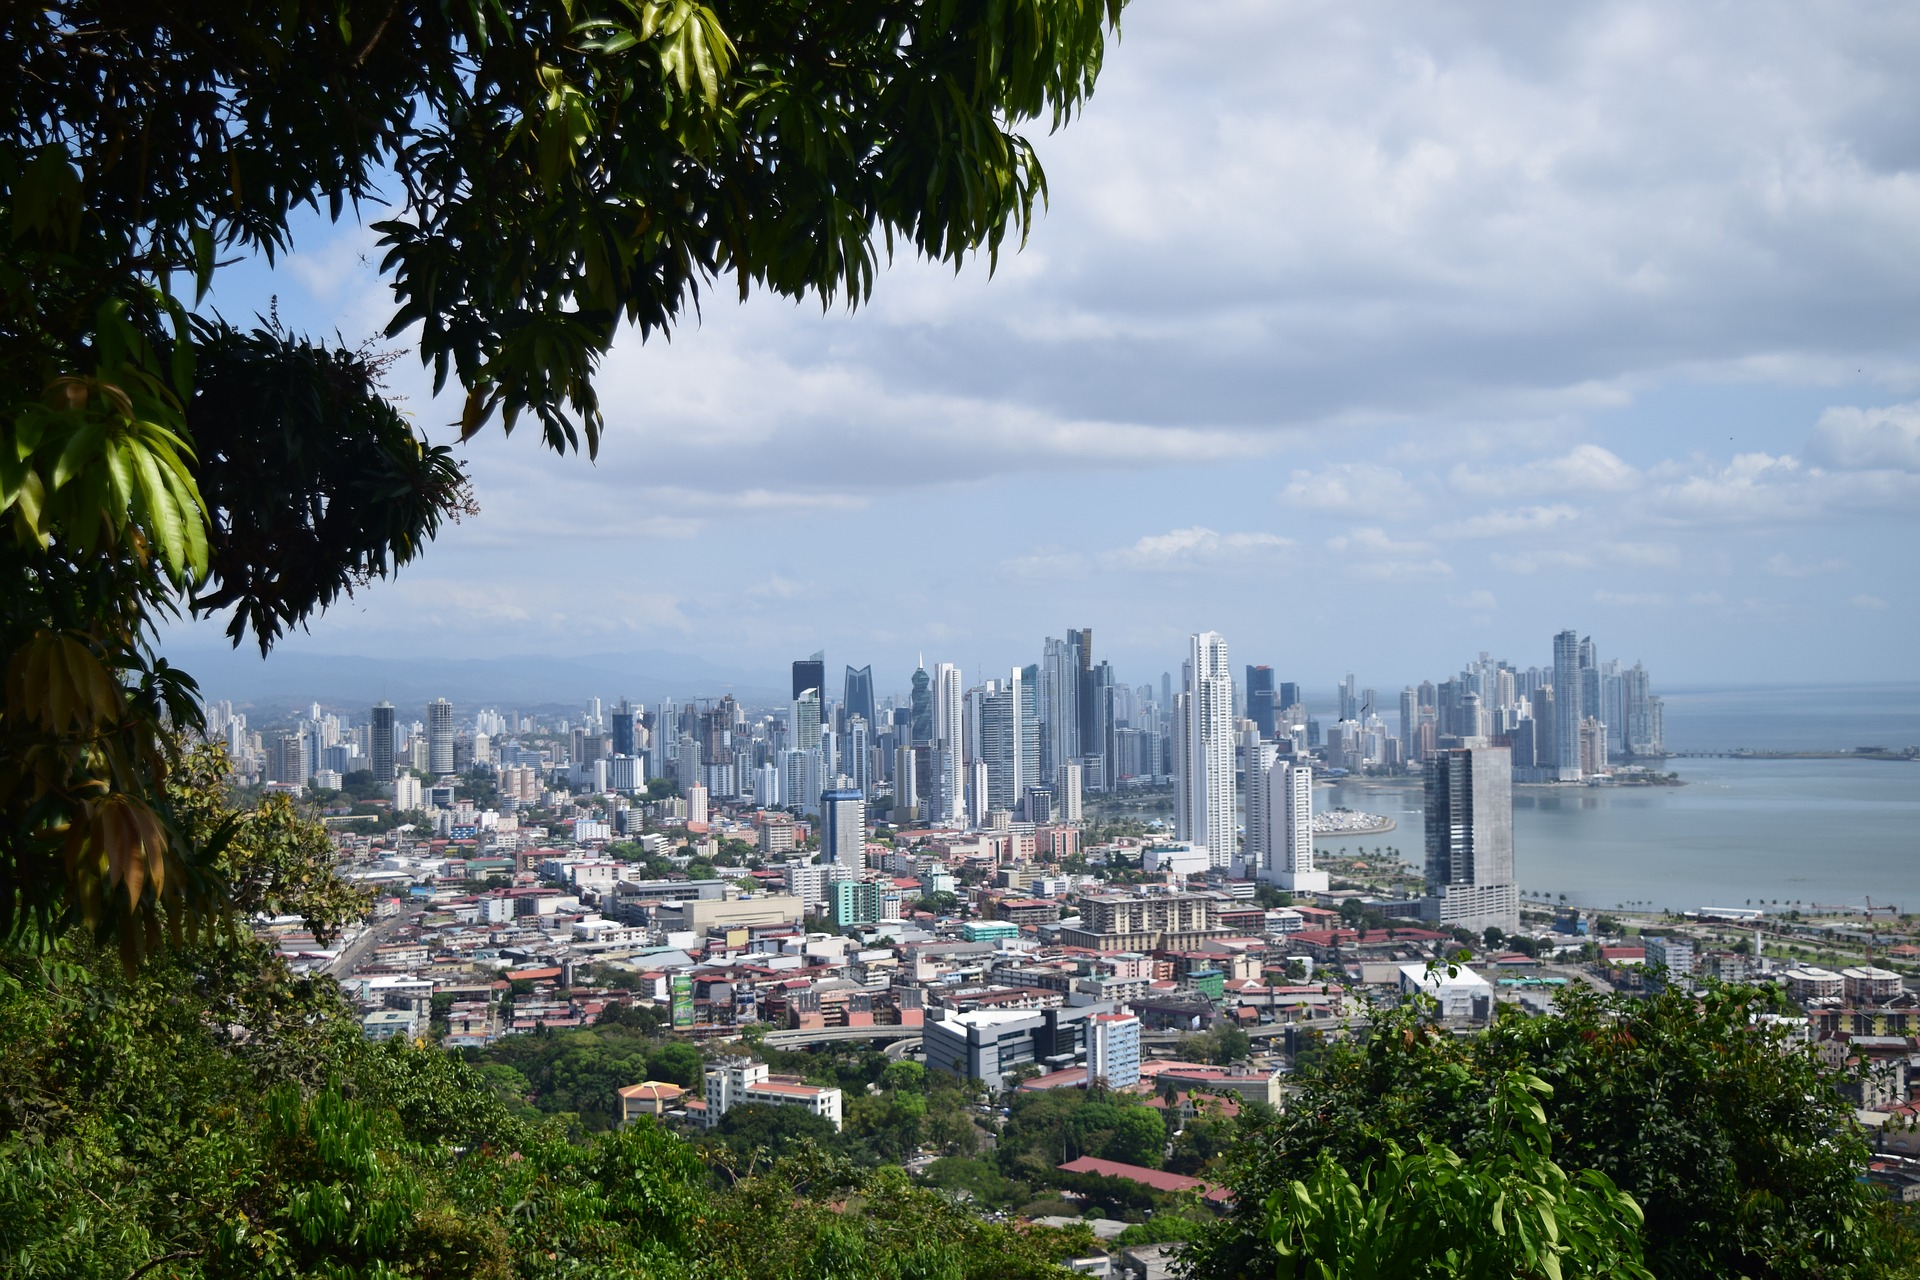 Reisen in Panama City günstig Buchen ab 679,14€ - eine Woche im 3 Sterne Hotel